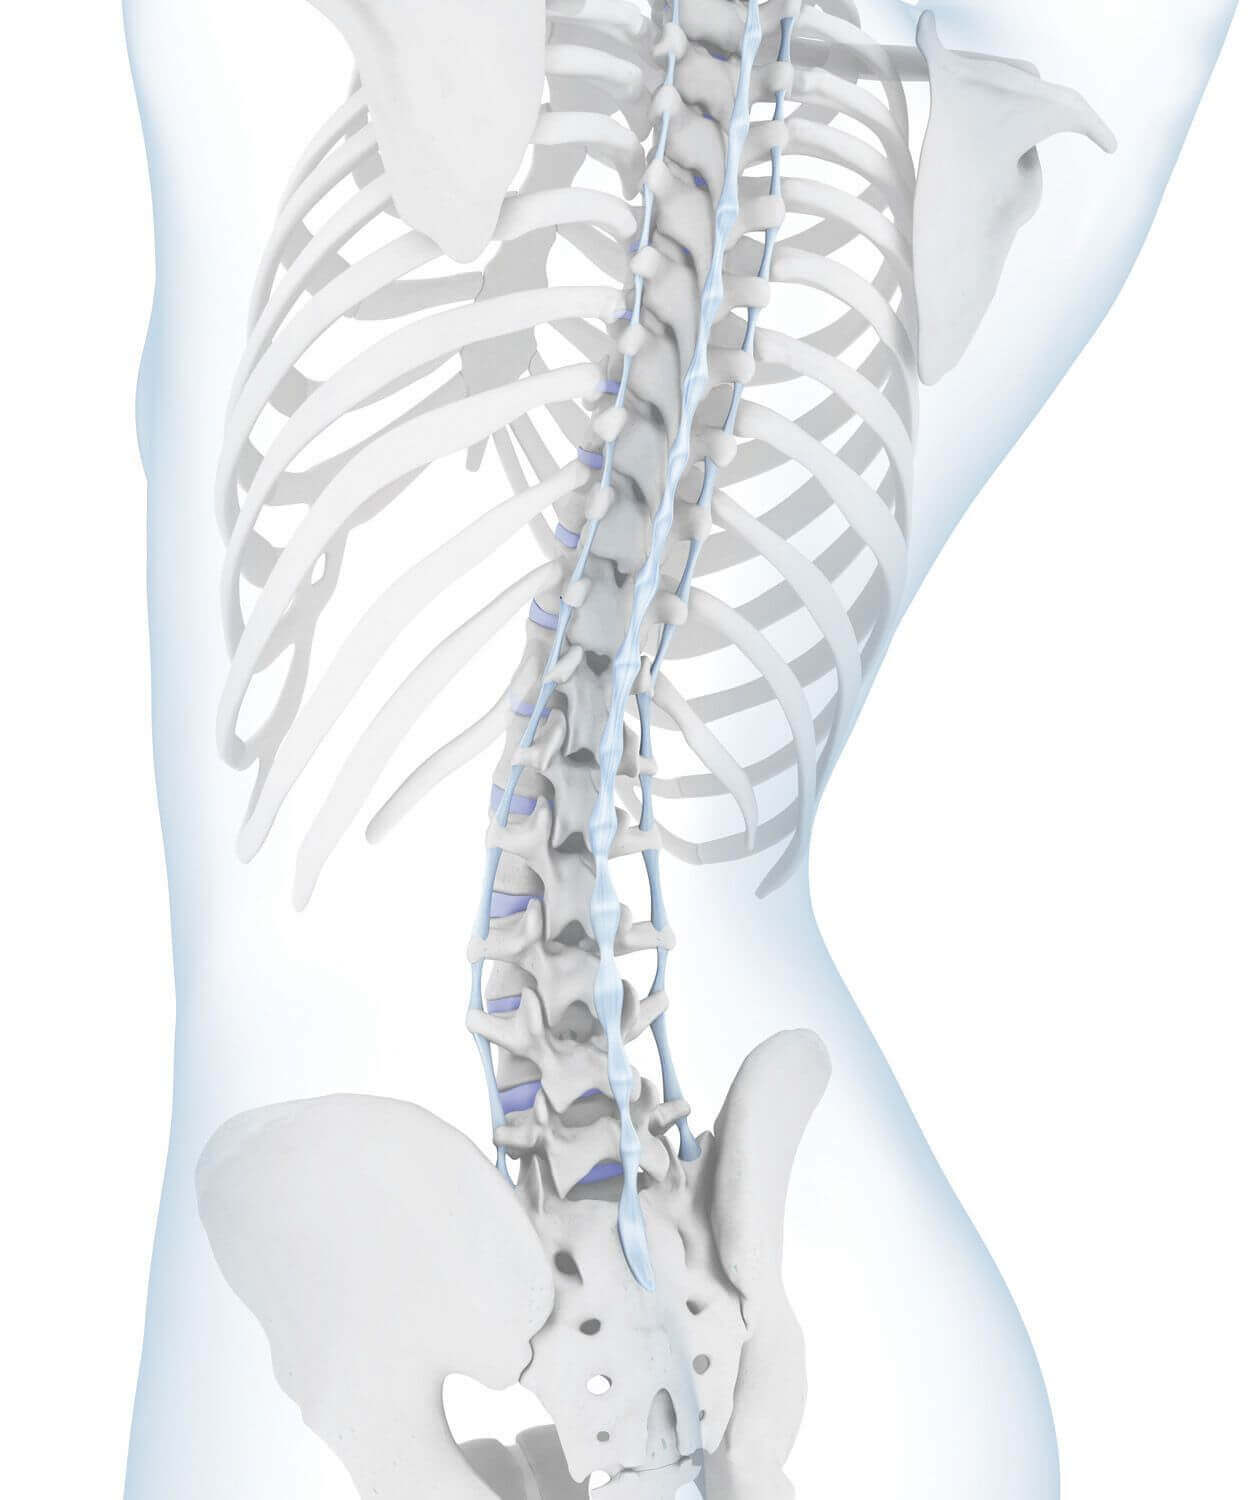 Darstellung der Anatomie der Wirbelsäule bei einem vorliegenden Hohlkreuz. Bei einem Hohlkreuz handelt es sich um eine extrem starke Krümmung der Lendenwirbelsäule. Auffällig ist dabei, dass sich sowohl der Bauch als auch das Becken signifikant nach vorne wölben.